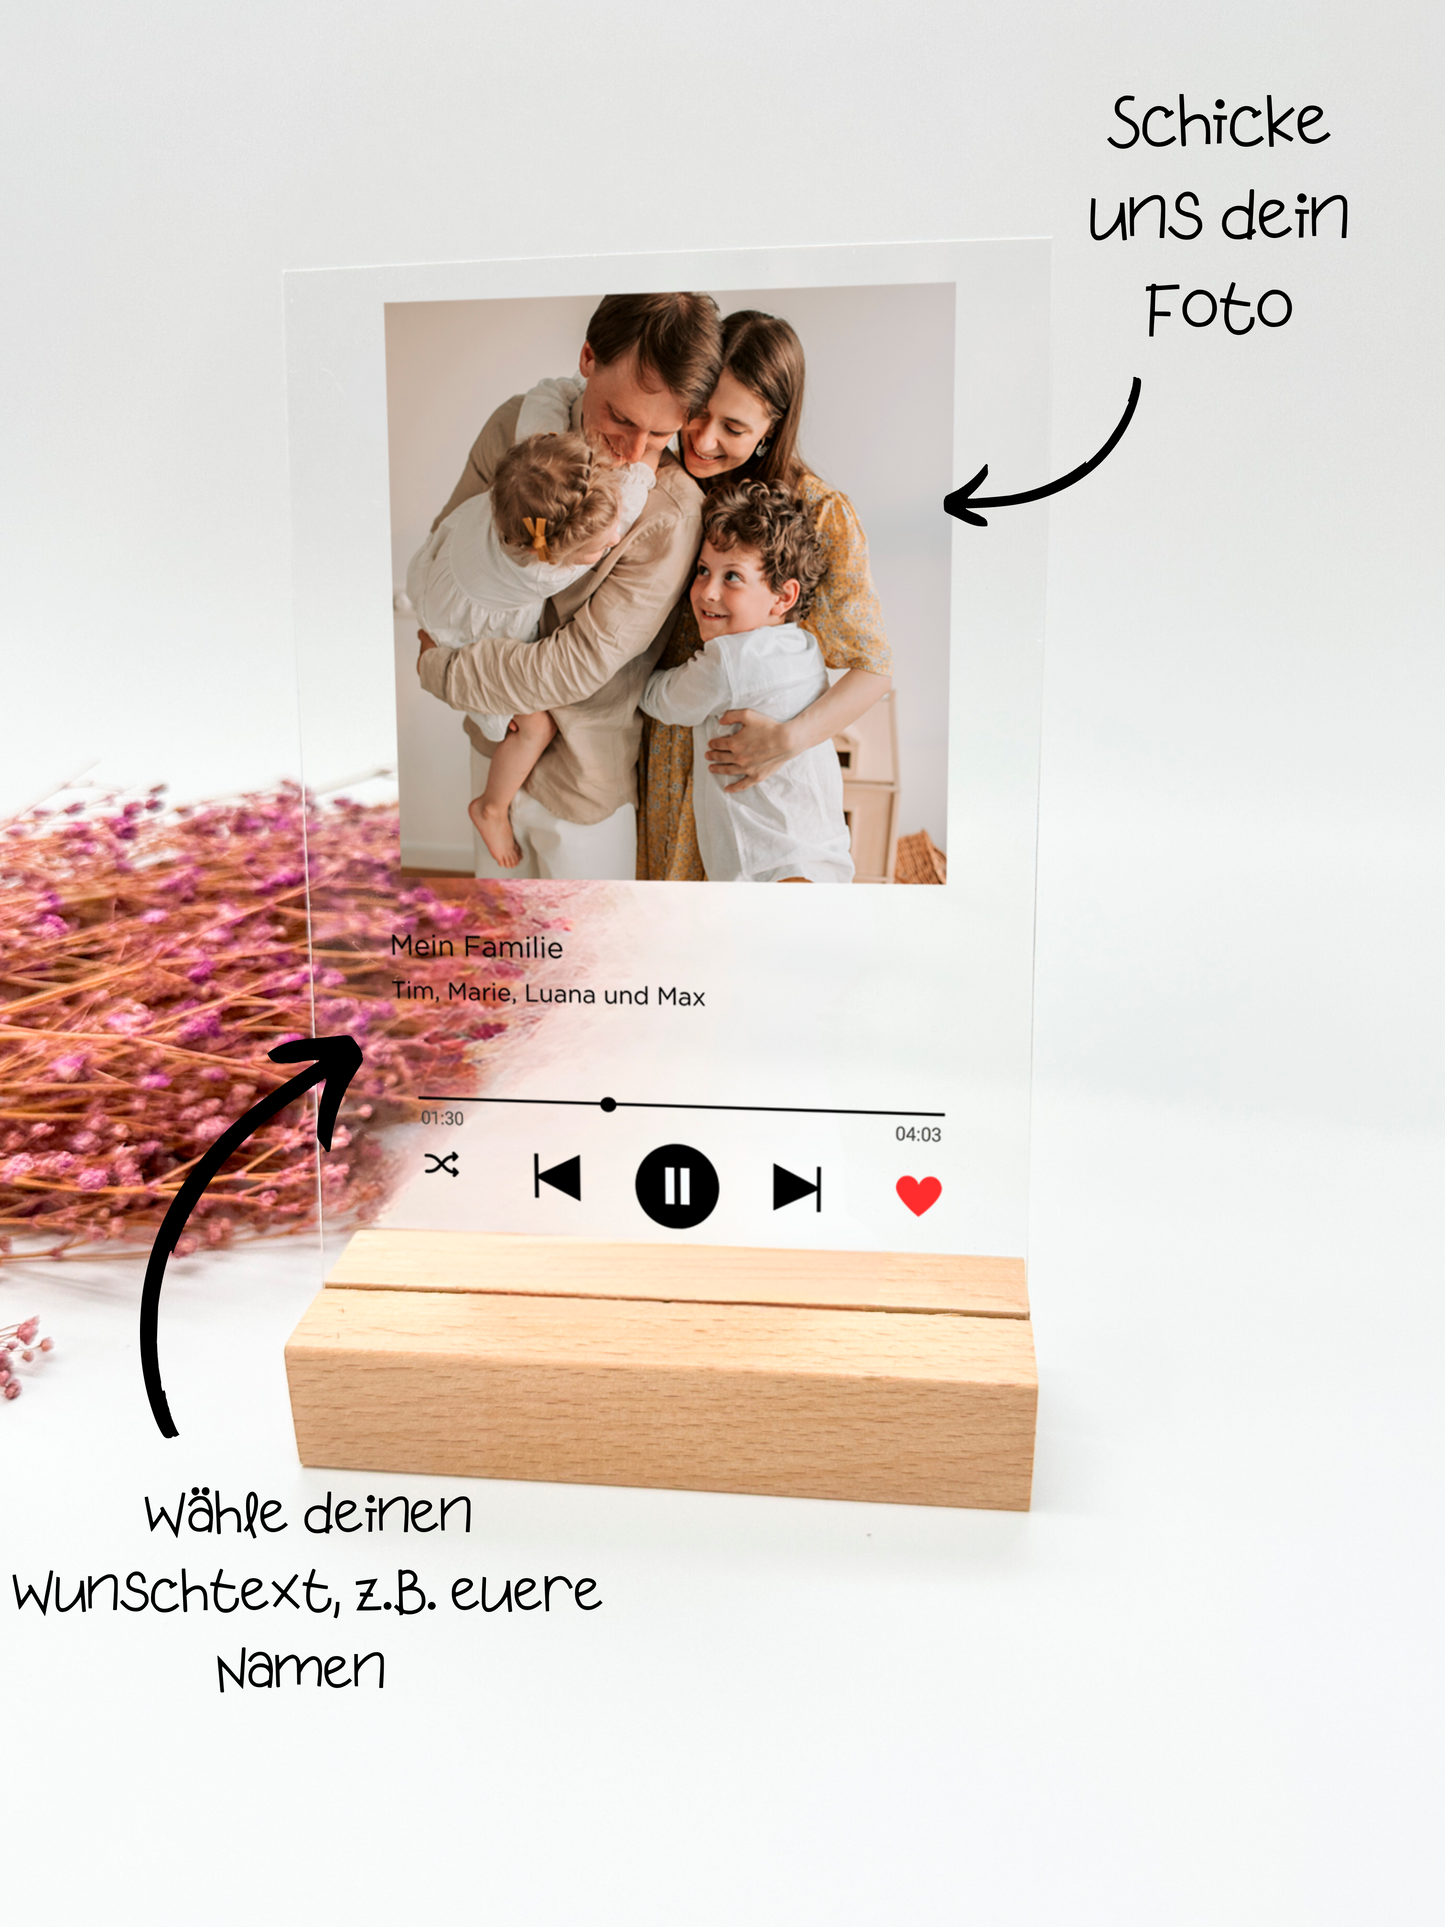 Image musicale sur verre acrylique/enregistrement de chanson personnalisé/cadeau pour les familles